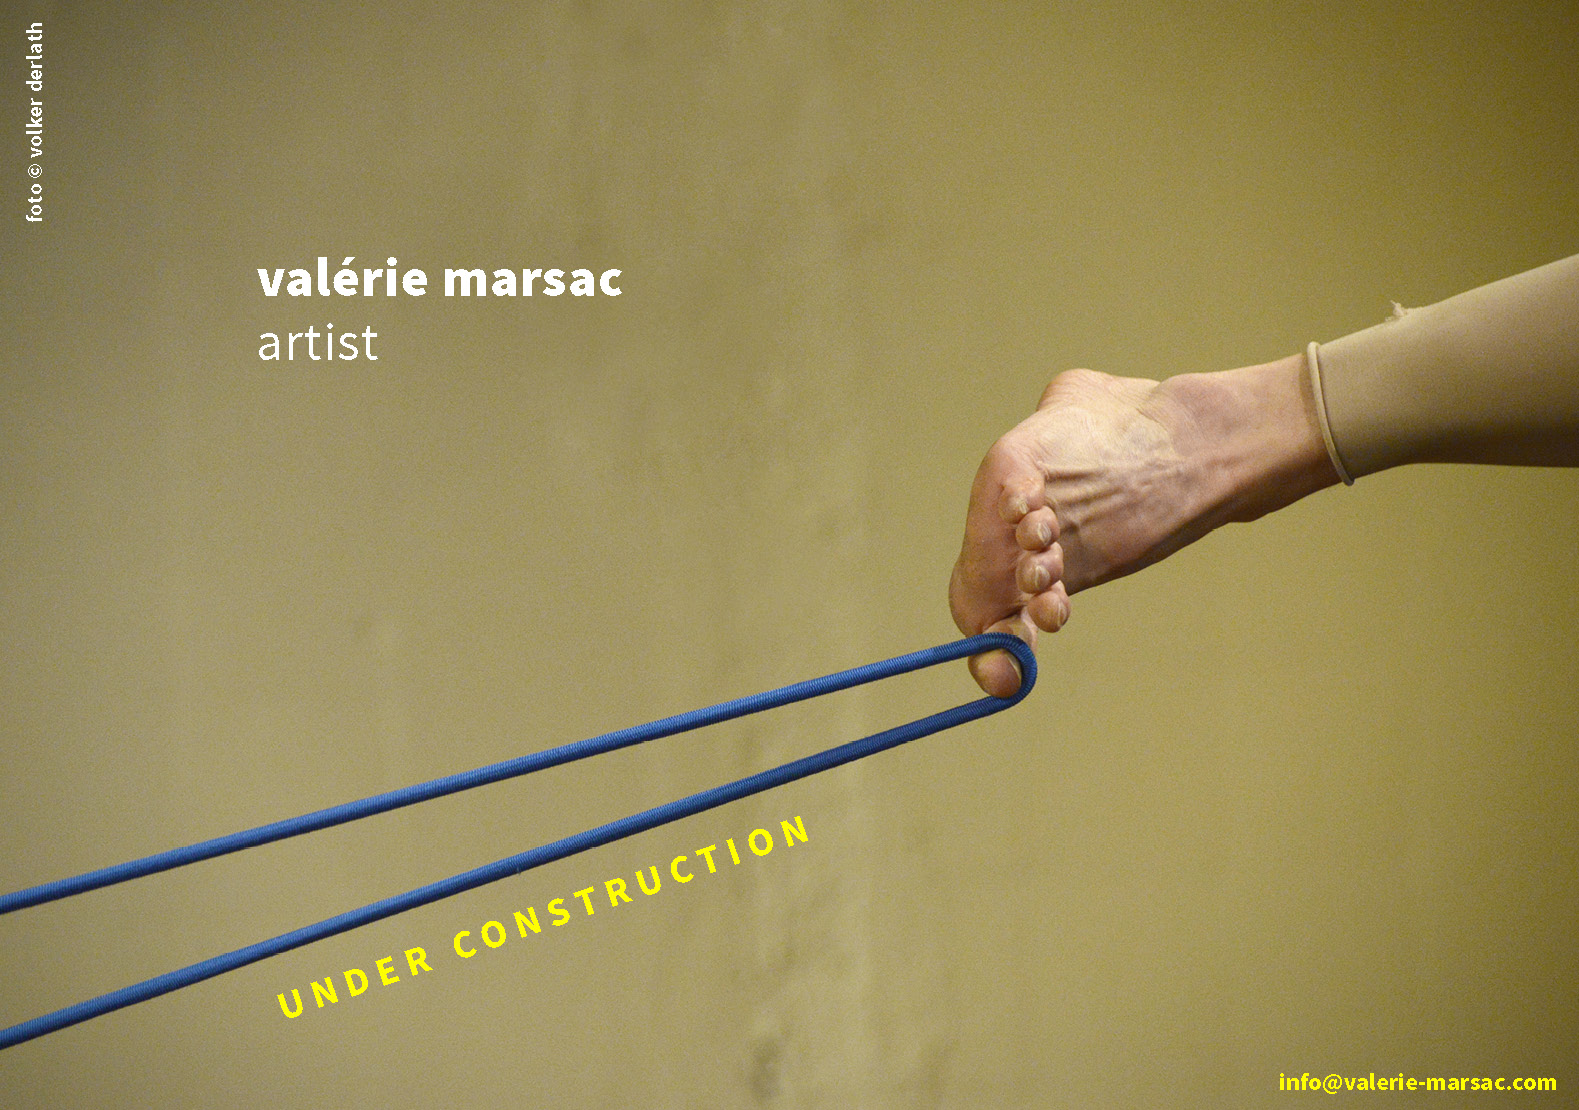 Valerie Marsac